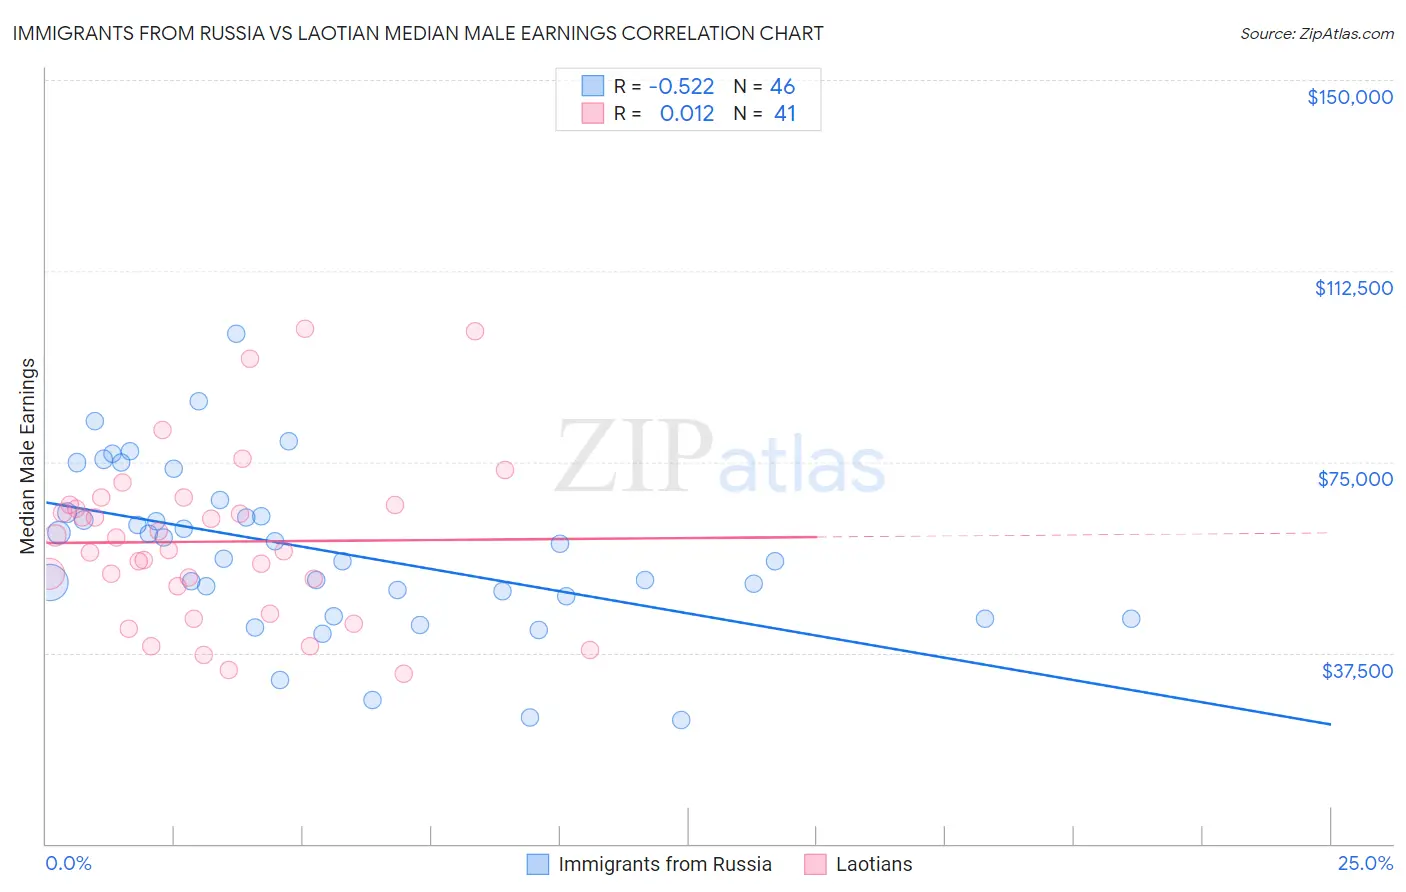 Immigrants from Russia vs Laotian Median Male Earnings